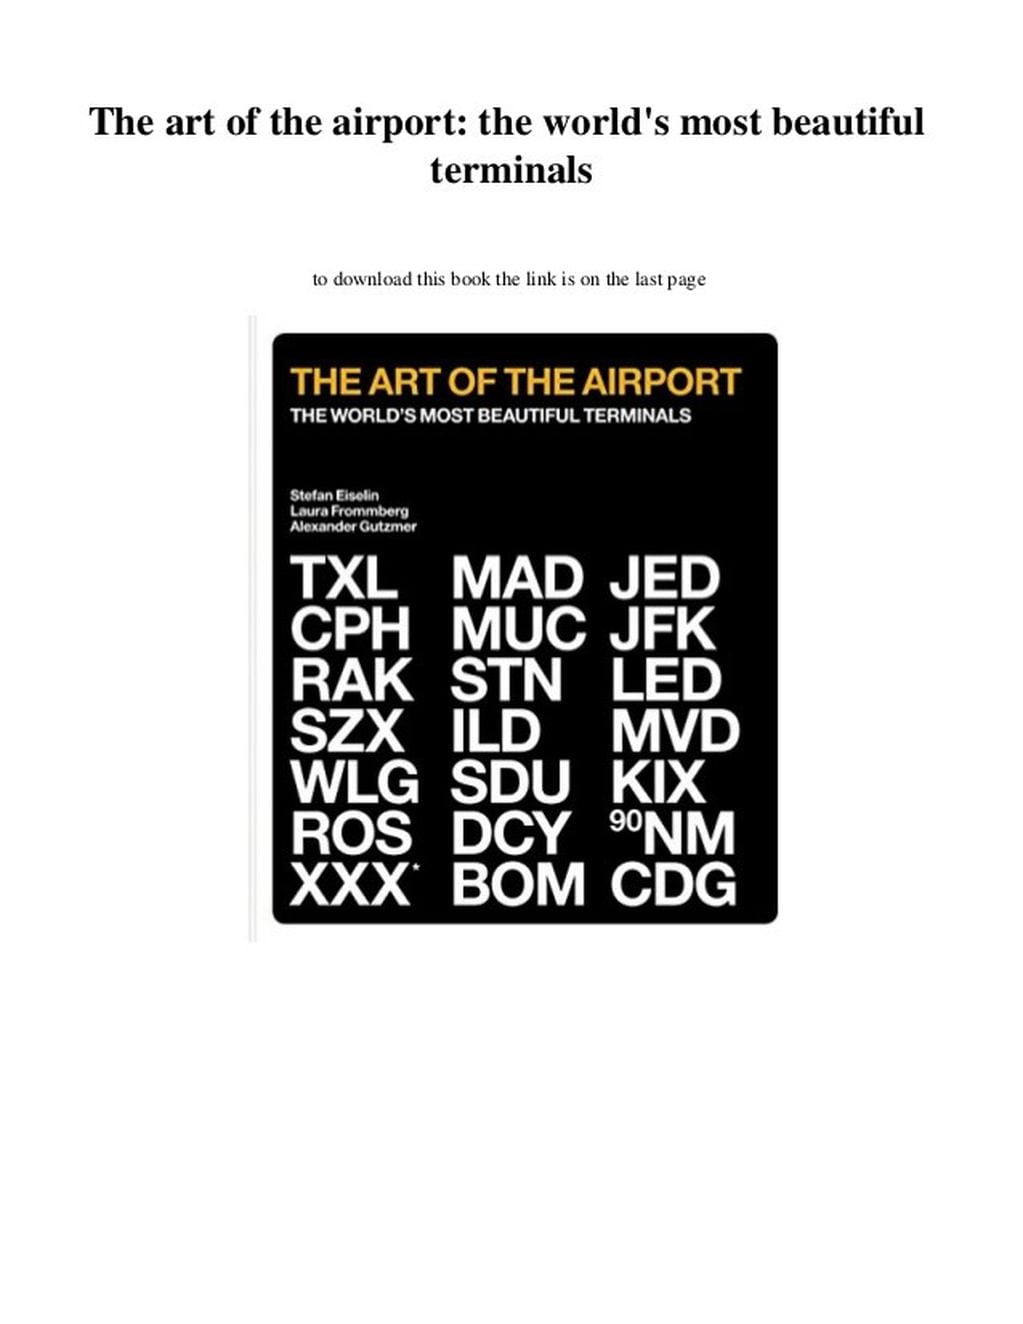 Alexander Gutzmer, libro: "21 aeropuertos más lindos del mundo"